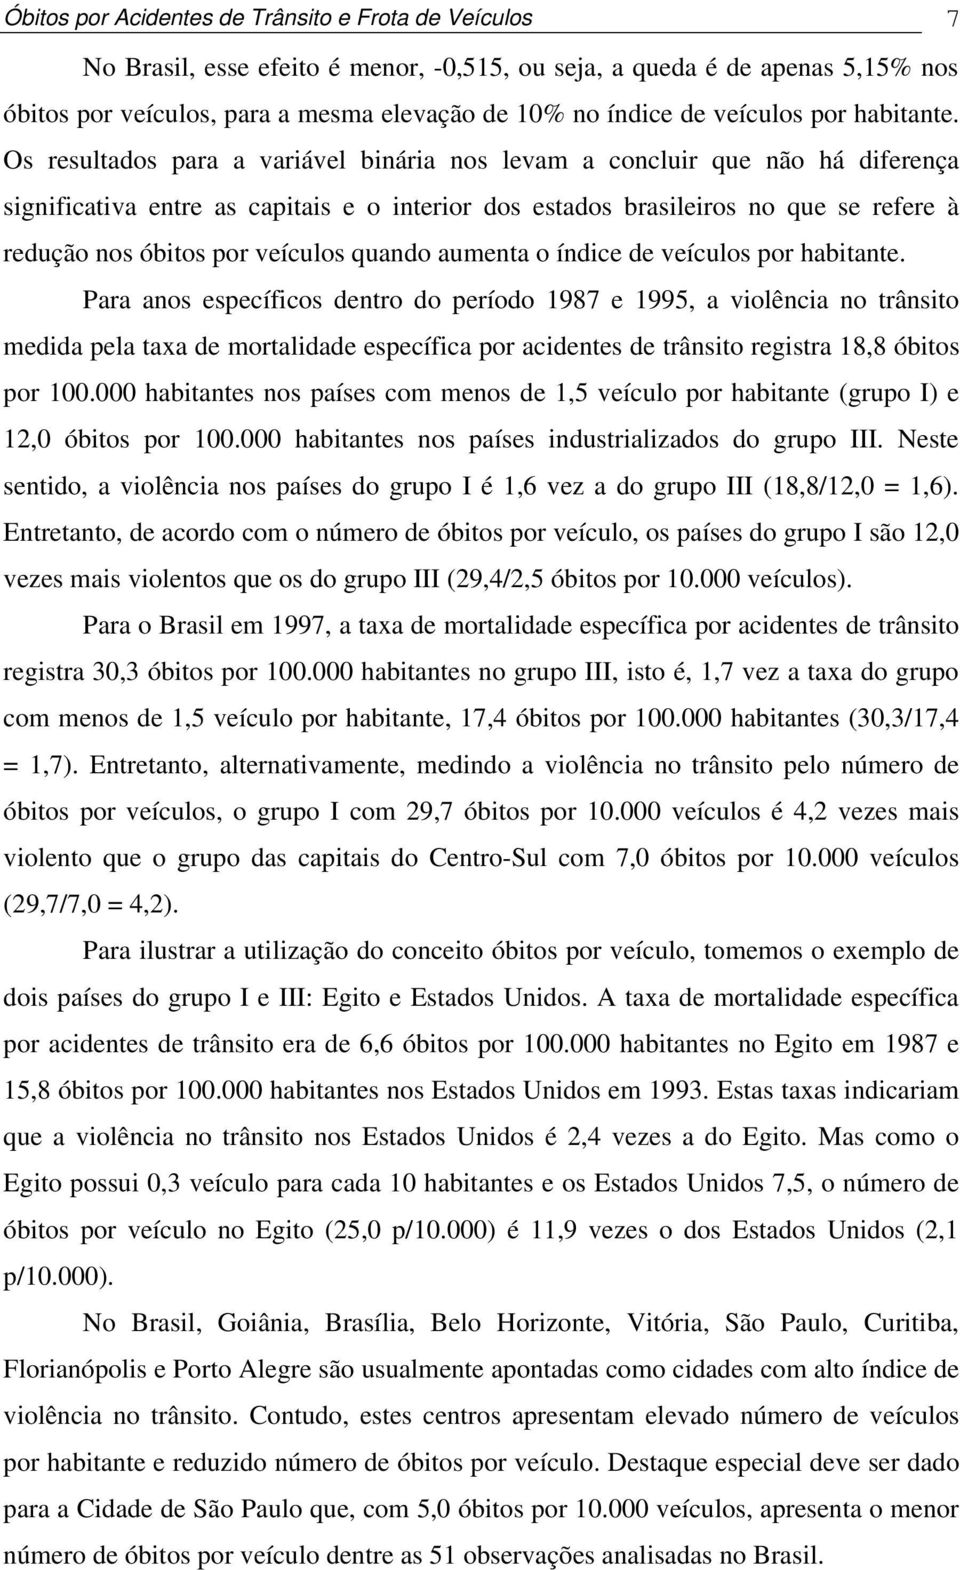 Os resultados para a variável binária nos levam a concluir que não há diferença significativa entre as capitais e o interior dos estados brasileiros no que se refere à redução nos óbitos por veículos